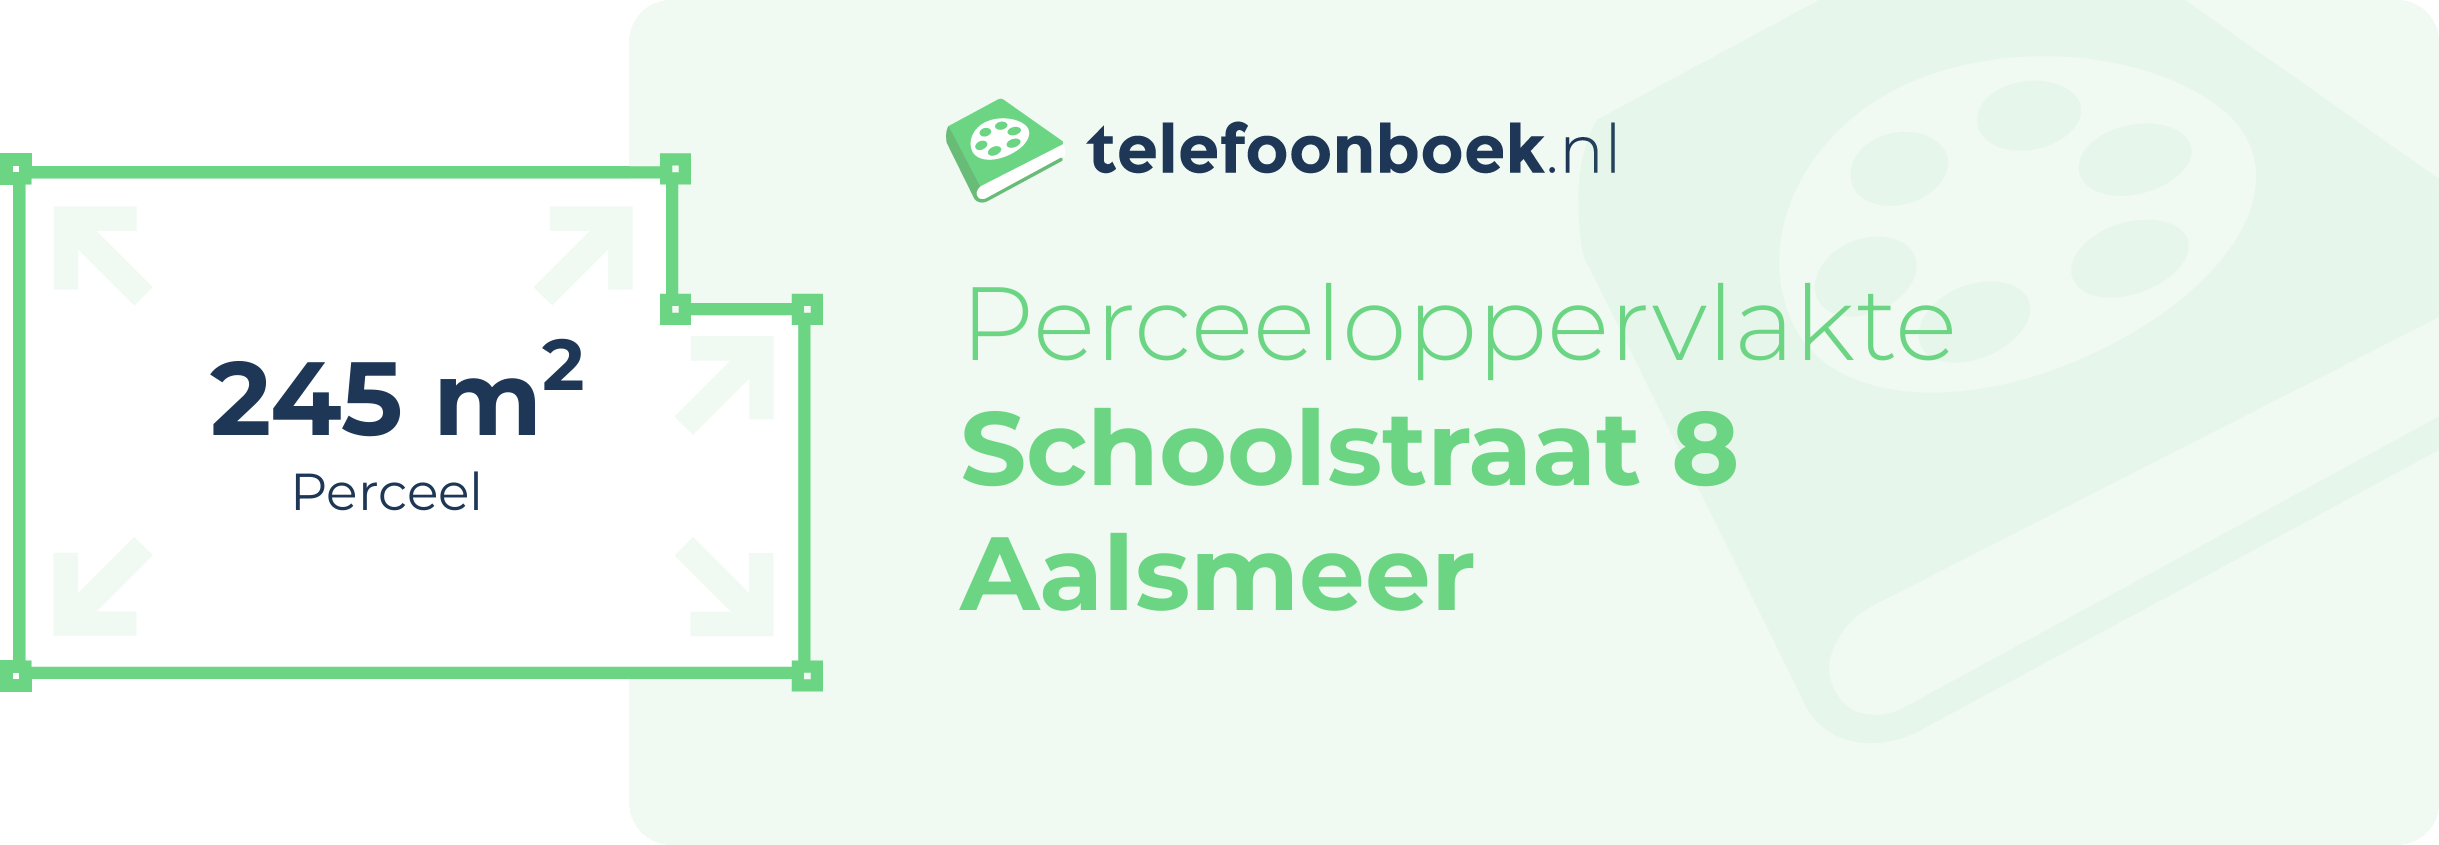 Perceeloppervlakte Schoolstraat 8 Aalsmeer